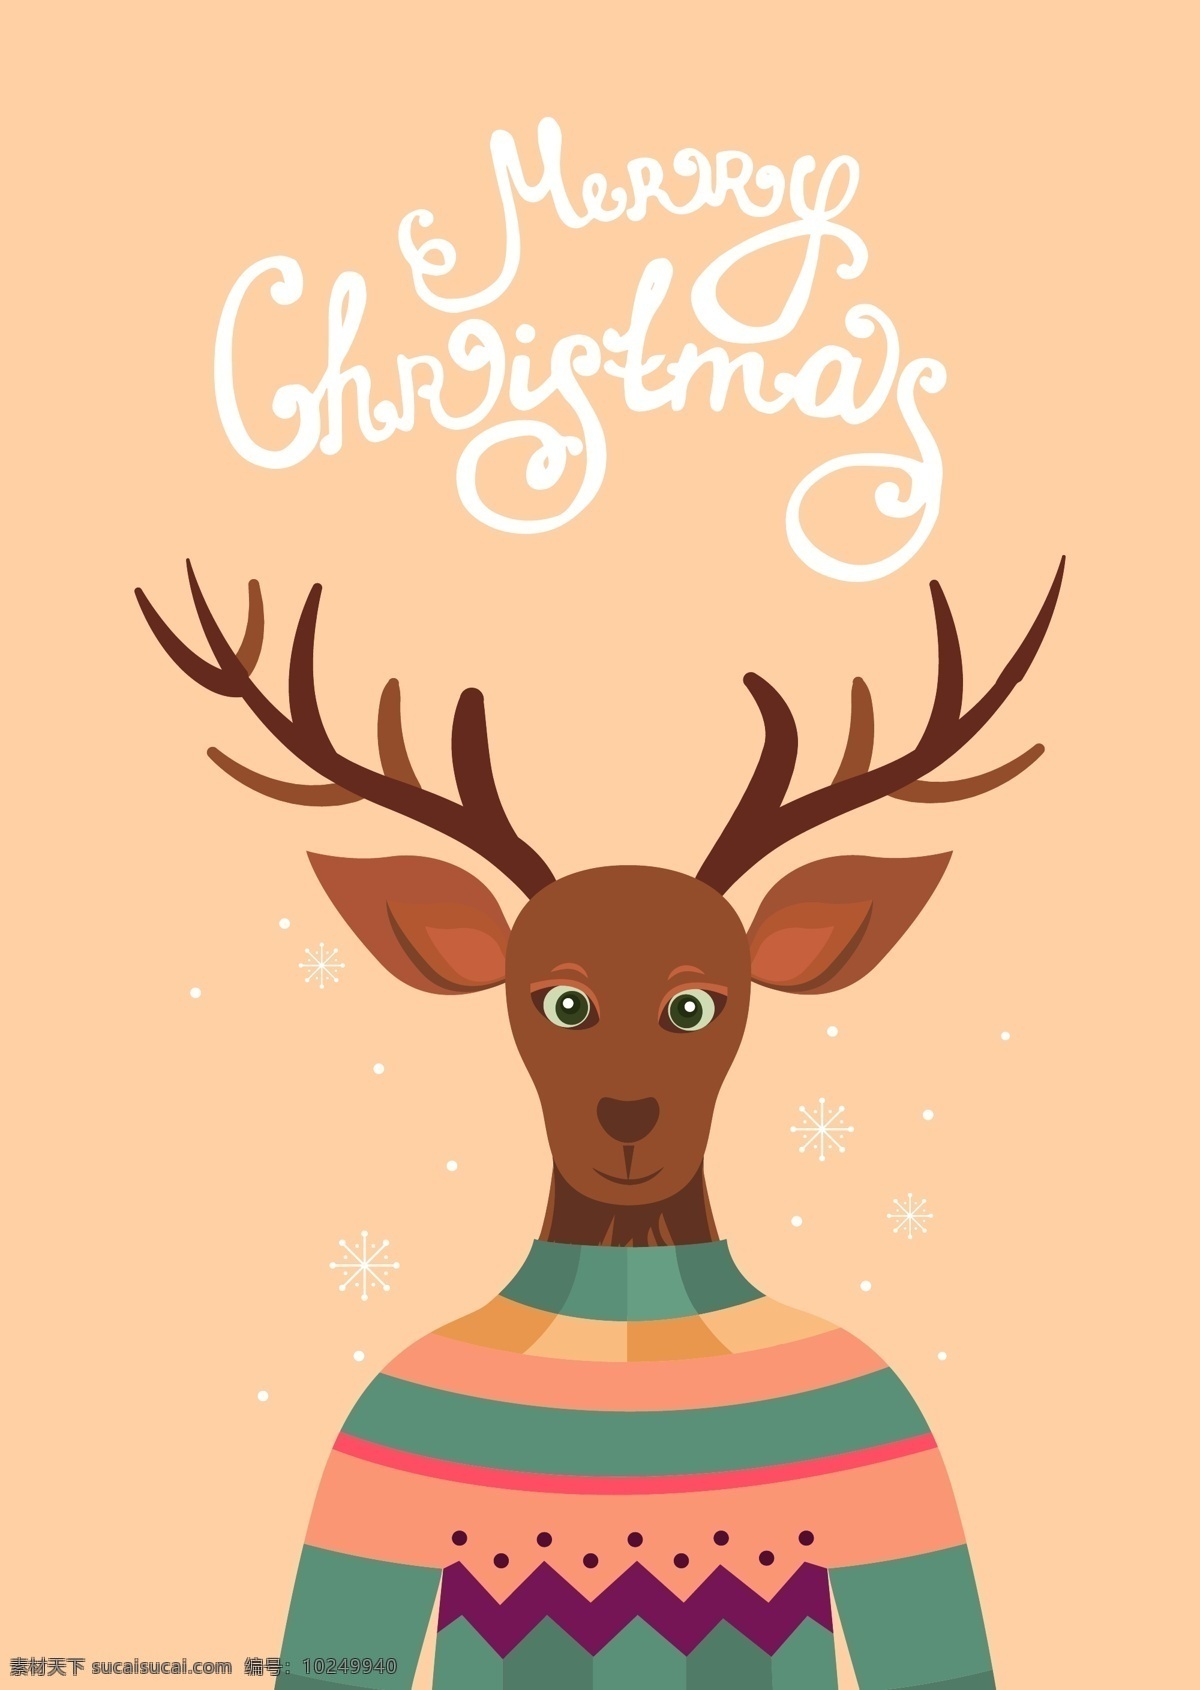 手绘 拟人化 圣诞 麋鹿 卡通 矢量 节日 毛衣 平面素材 设计素材 矢量素材 条纹 棕色